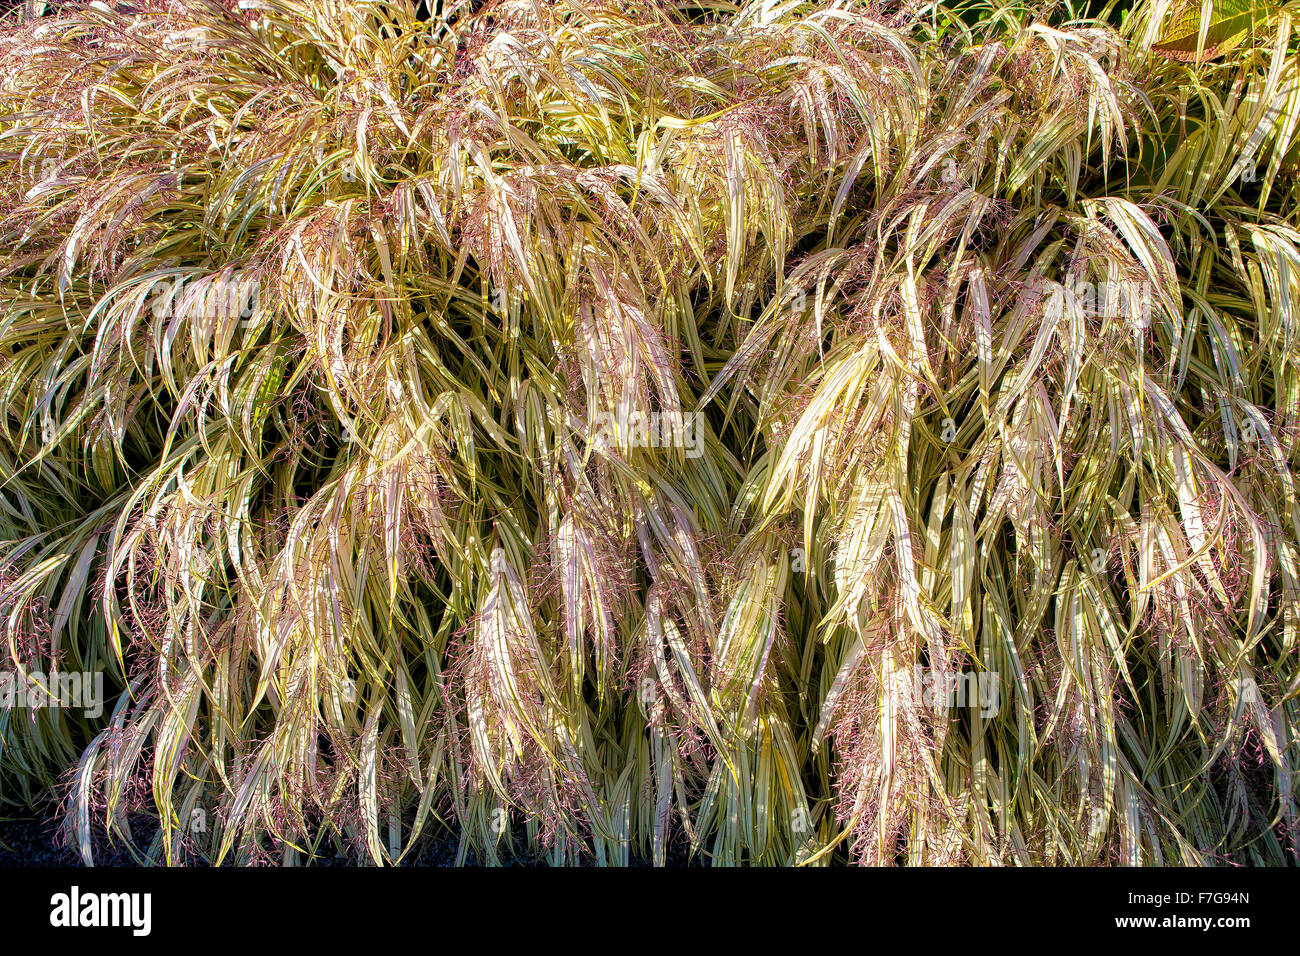 L'herbe d'argent japonais, le Miscanthus sinensis 'Variegatus' Eulalia, aussi appelée Herbe de jeune fille. Banque D'Images